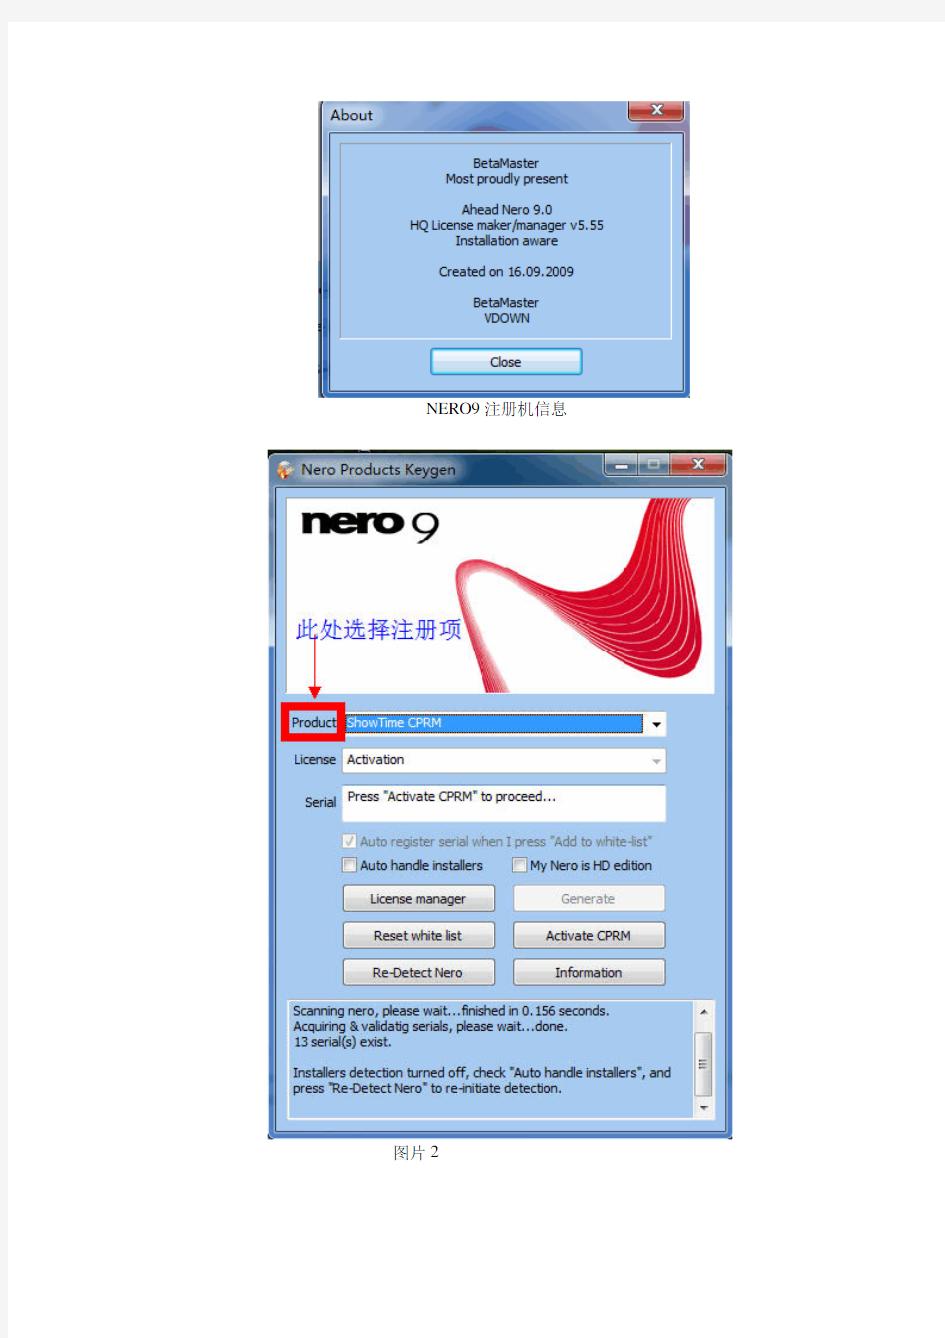 NERO9注册机使用手册  破解方法  完全破解 最好的刻录软件